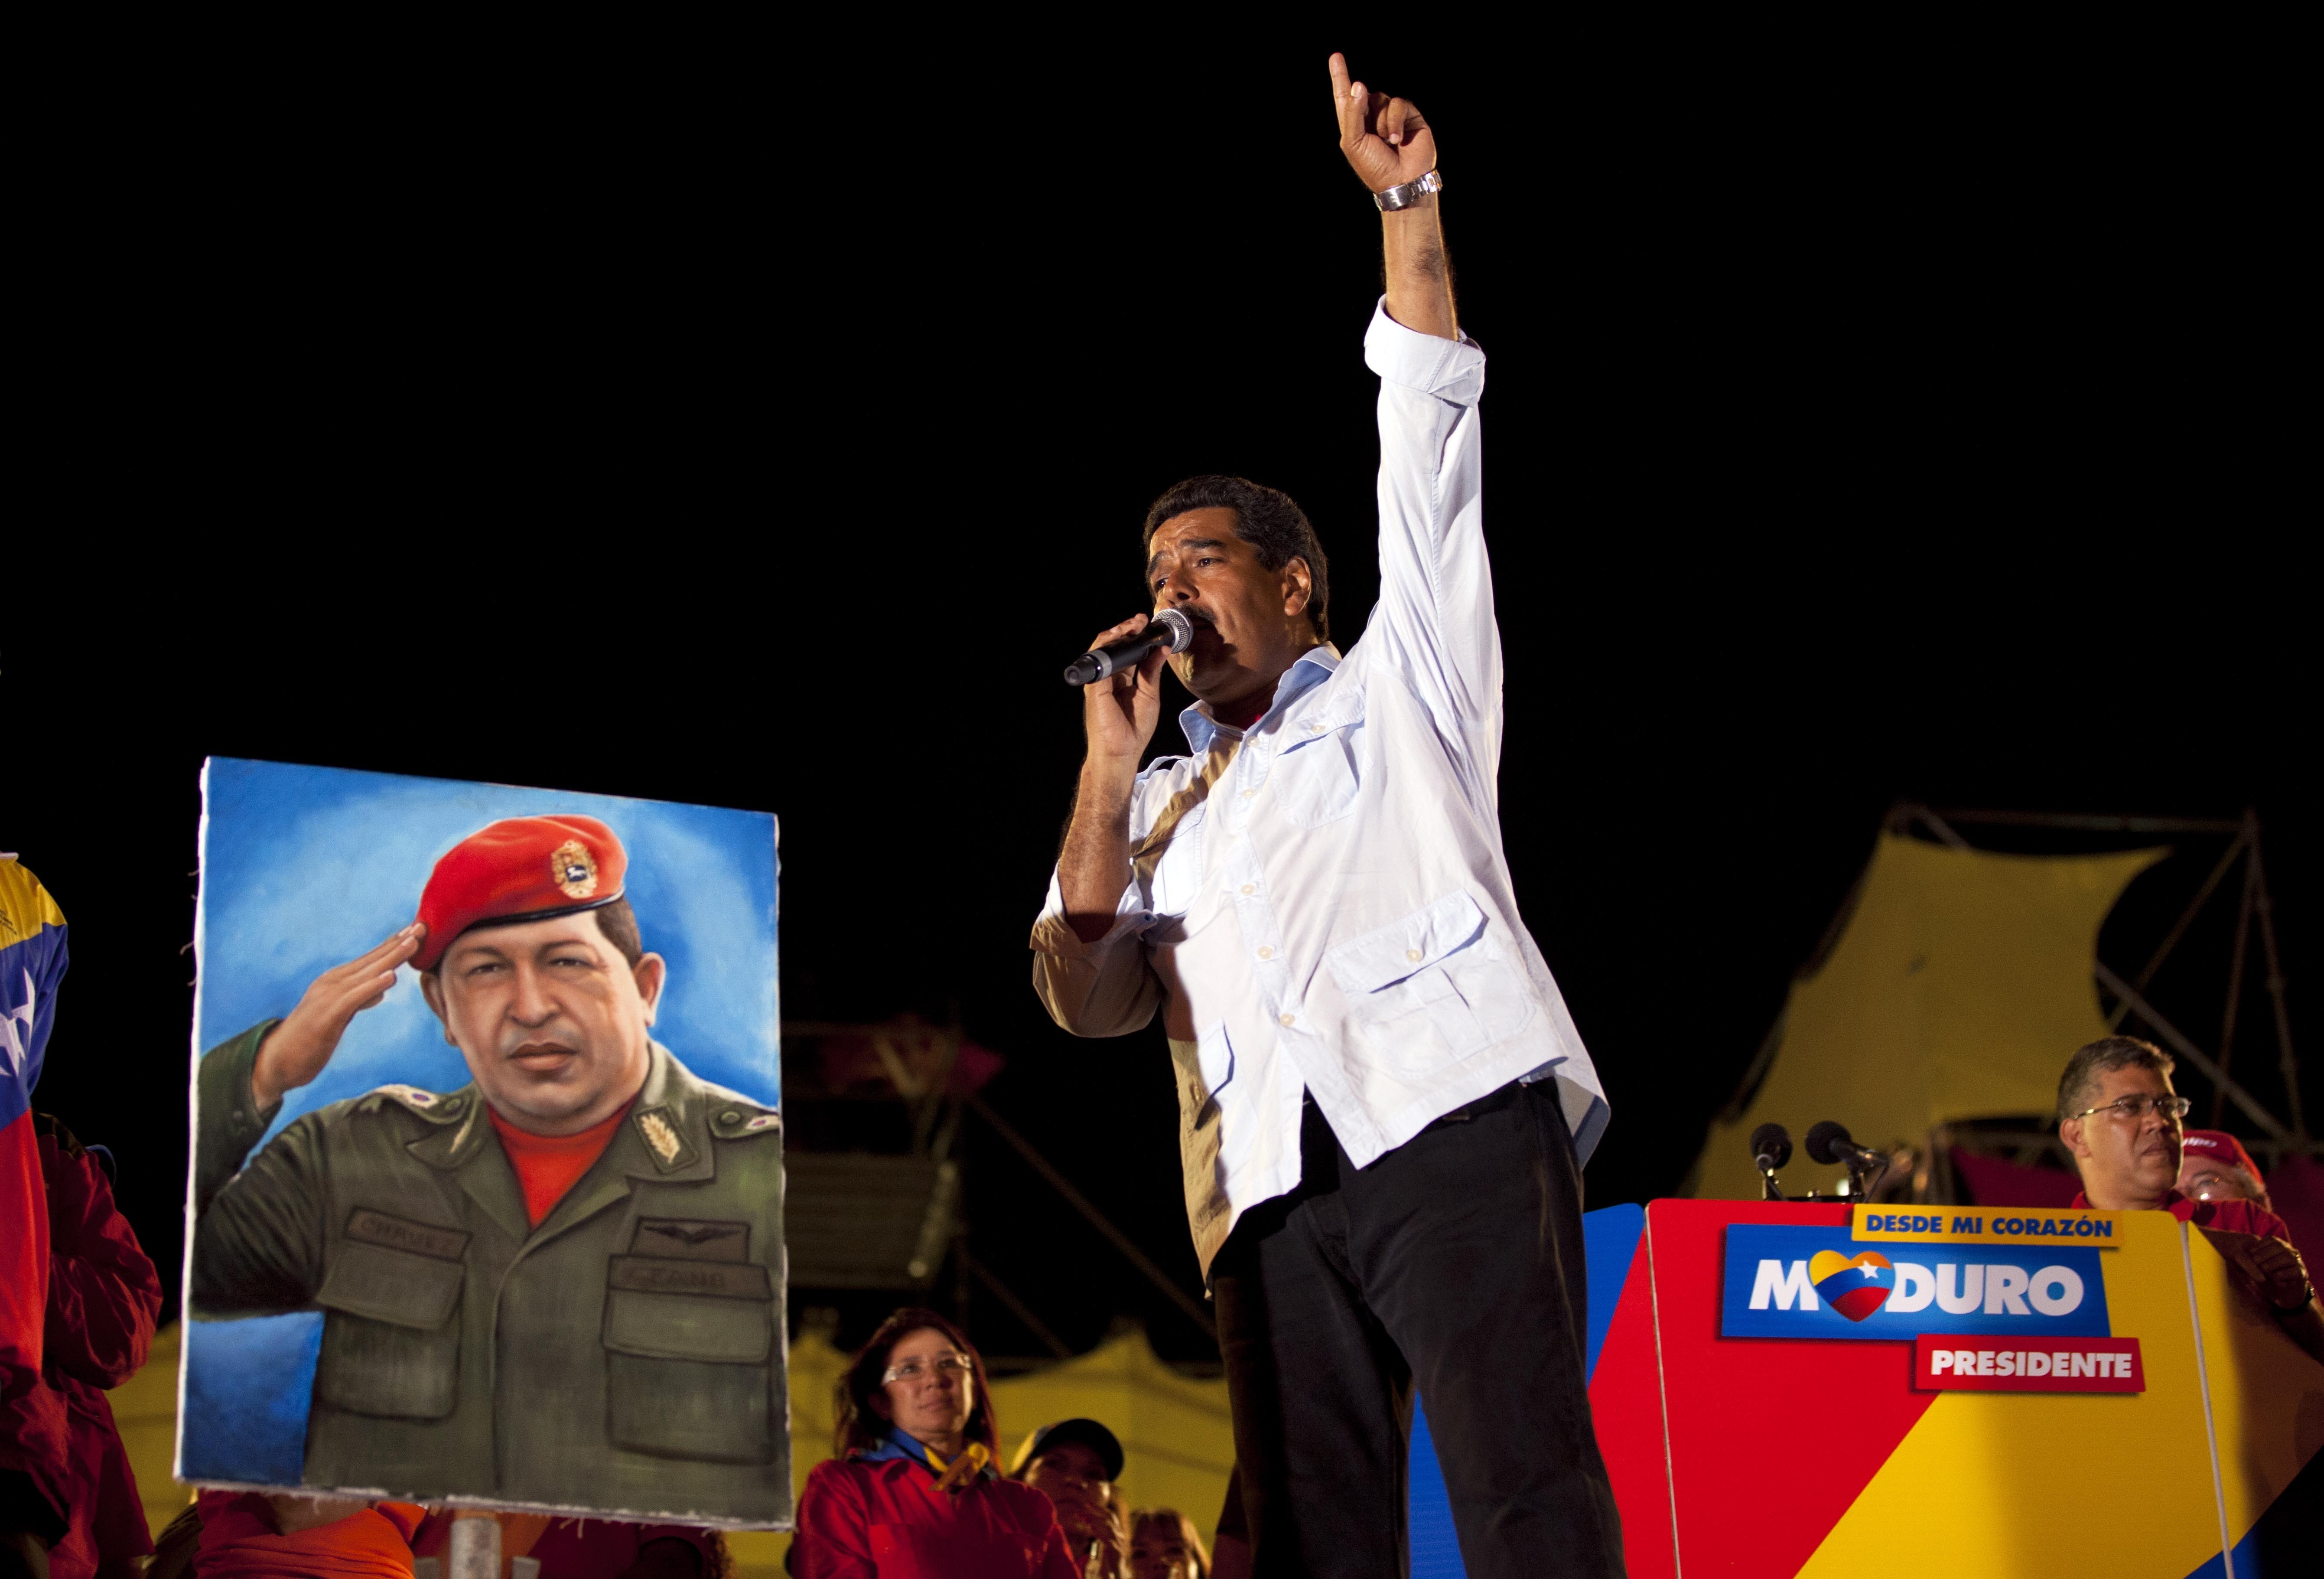   Sadece bedence aramızdan ayrılan, ama anısı her zaman Devrimci Mücadelemizde yaşayacak olan, Dünya Halklarının dostu Hugo Chavez Frias Yoldaş, “Savaş Köpeği” olarak adlandırmıştı, ABD Emperyalistlerinin kuklası Devlet Başkanlarını. Kahraman […]